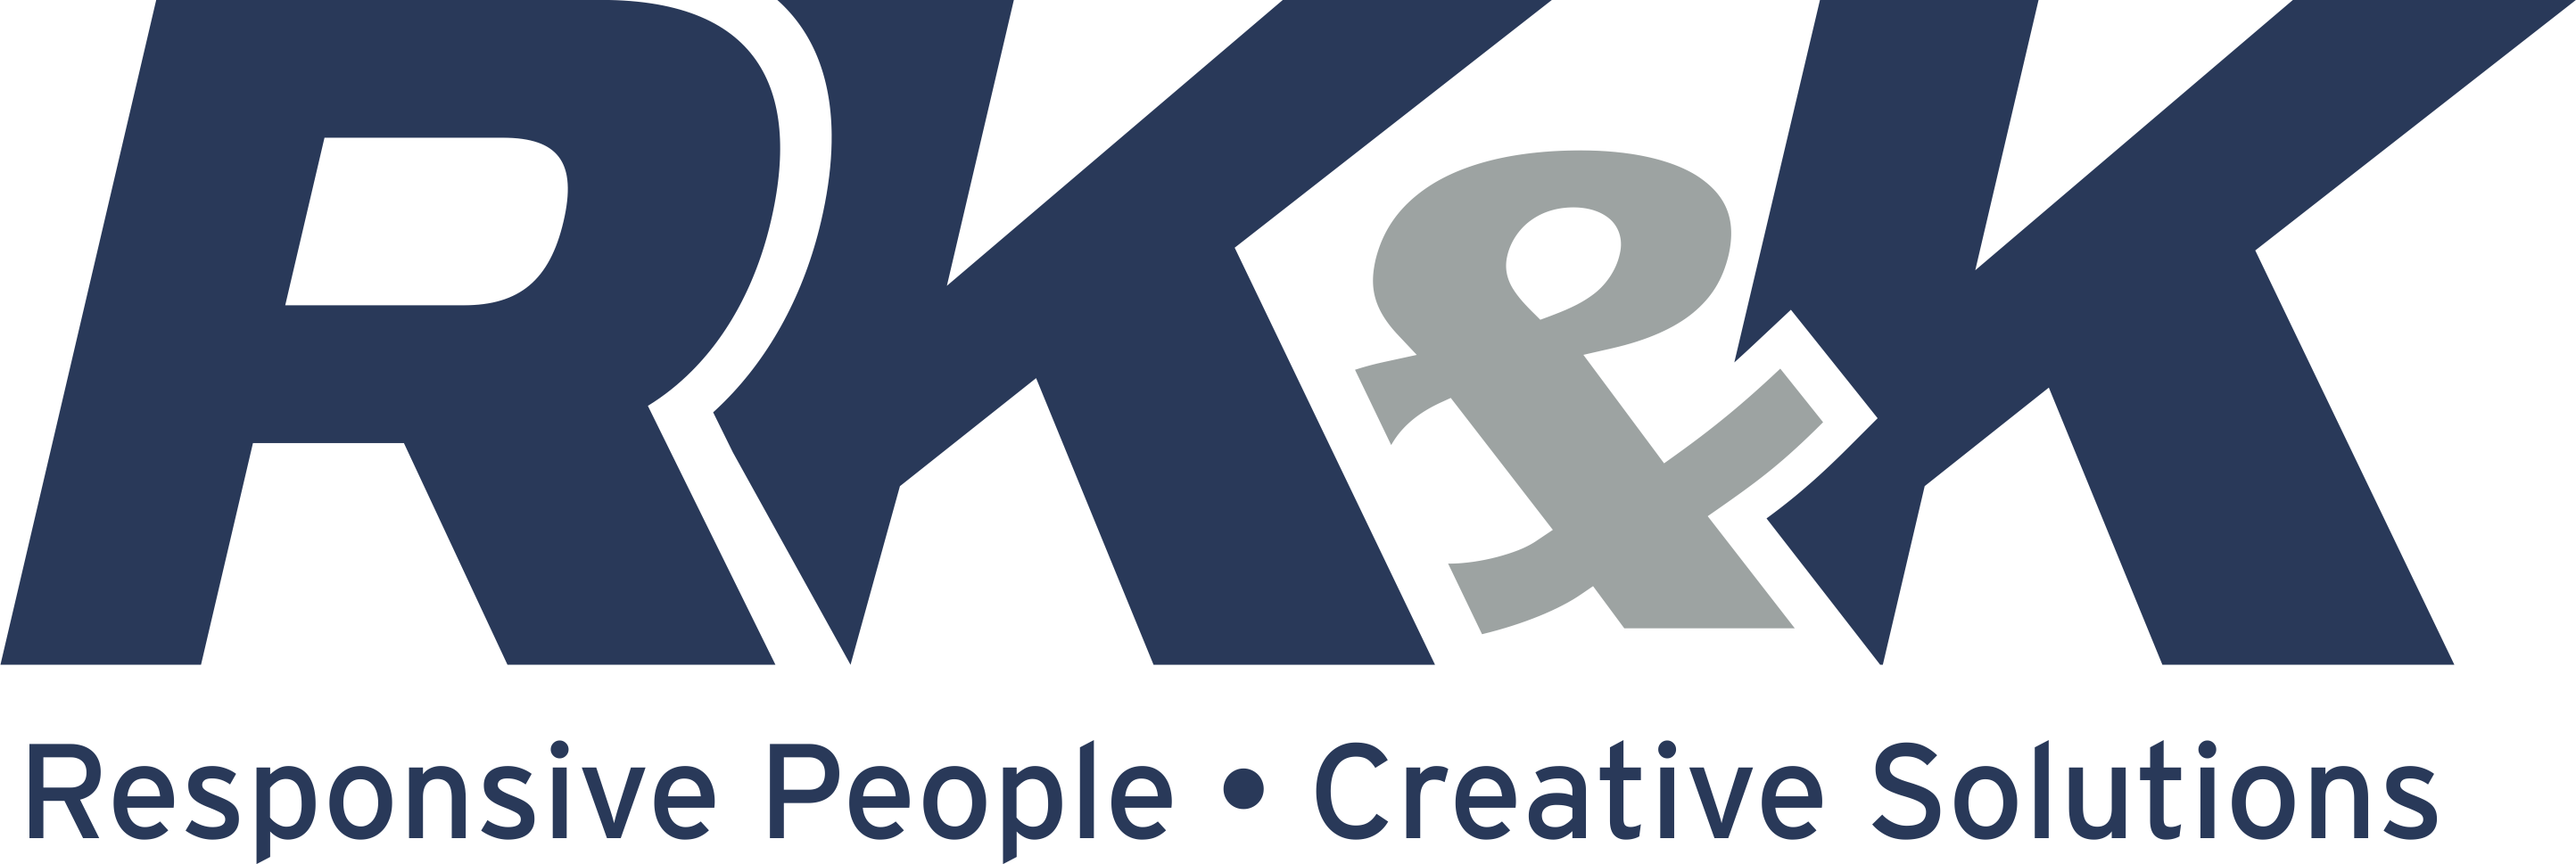 RK&K Logo